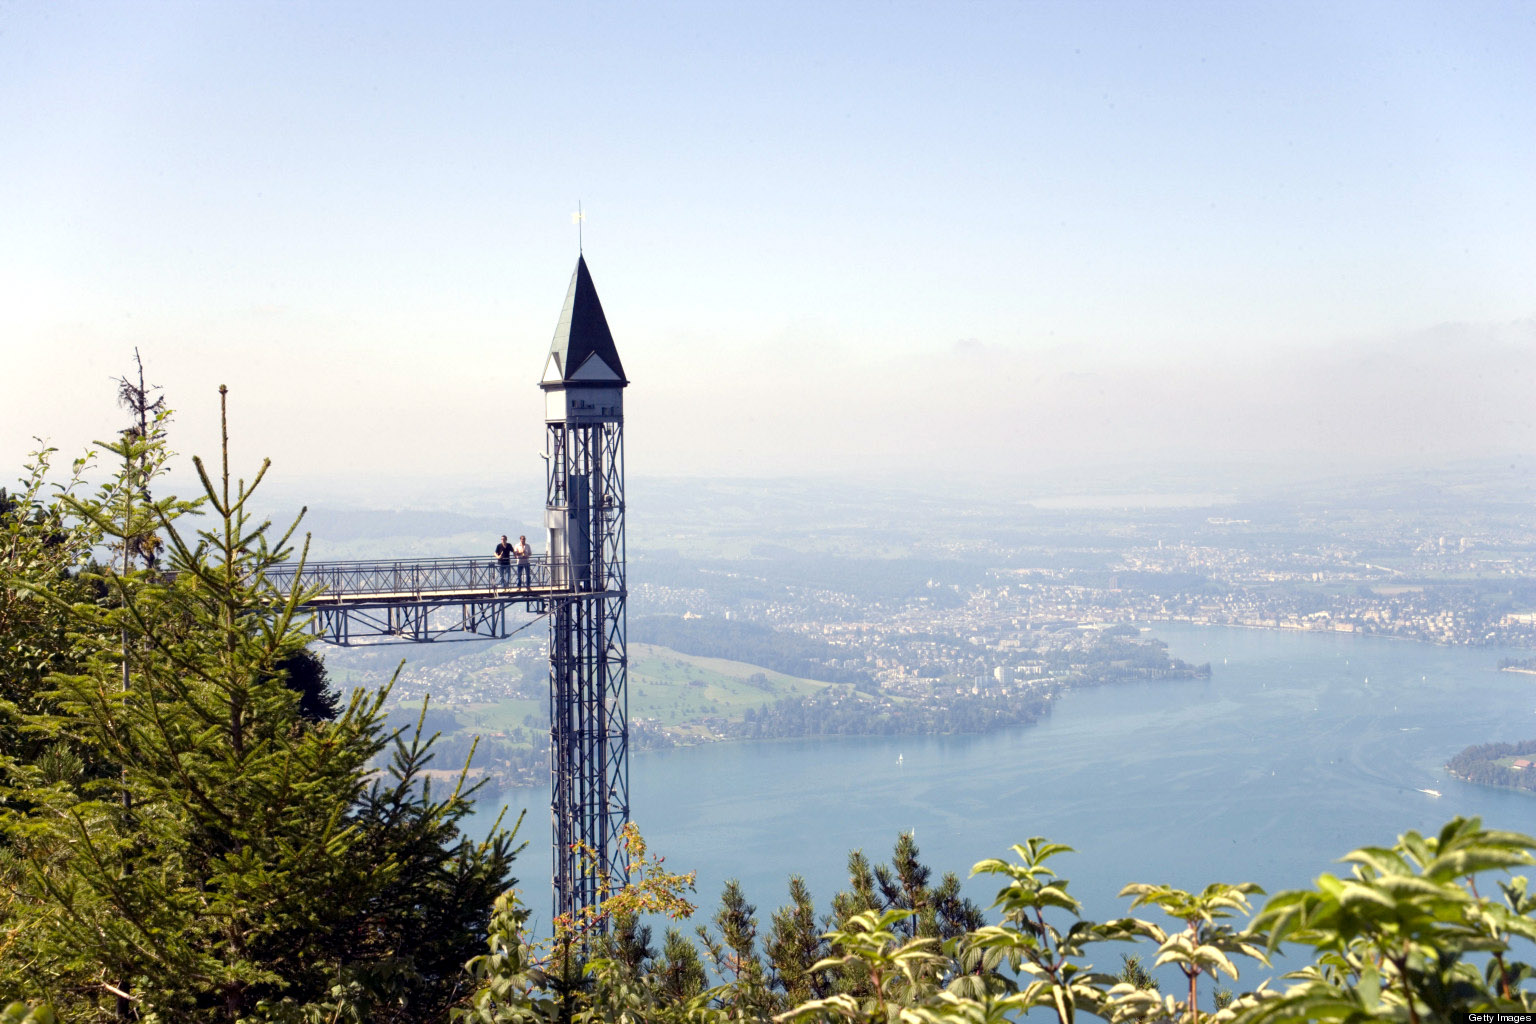 Hammetschwand Elevator (153 m, highest exterior elevator of Europe), Buergenstock (1128 m), Buergenstock, Canton Nidwalden, Switzerland